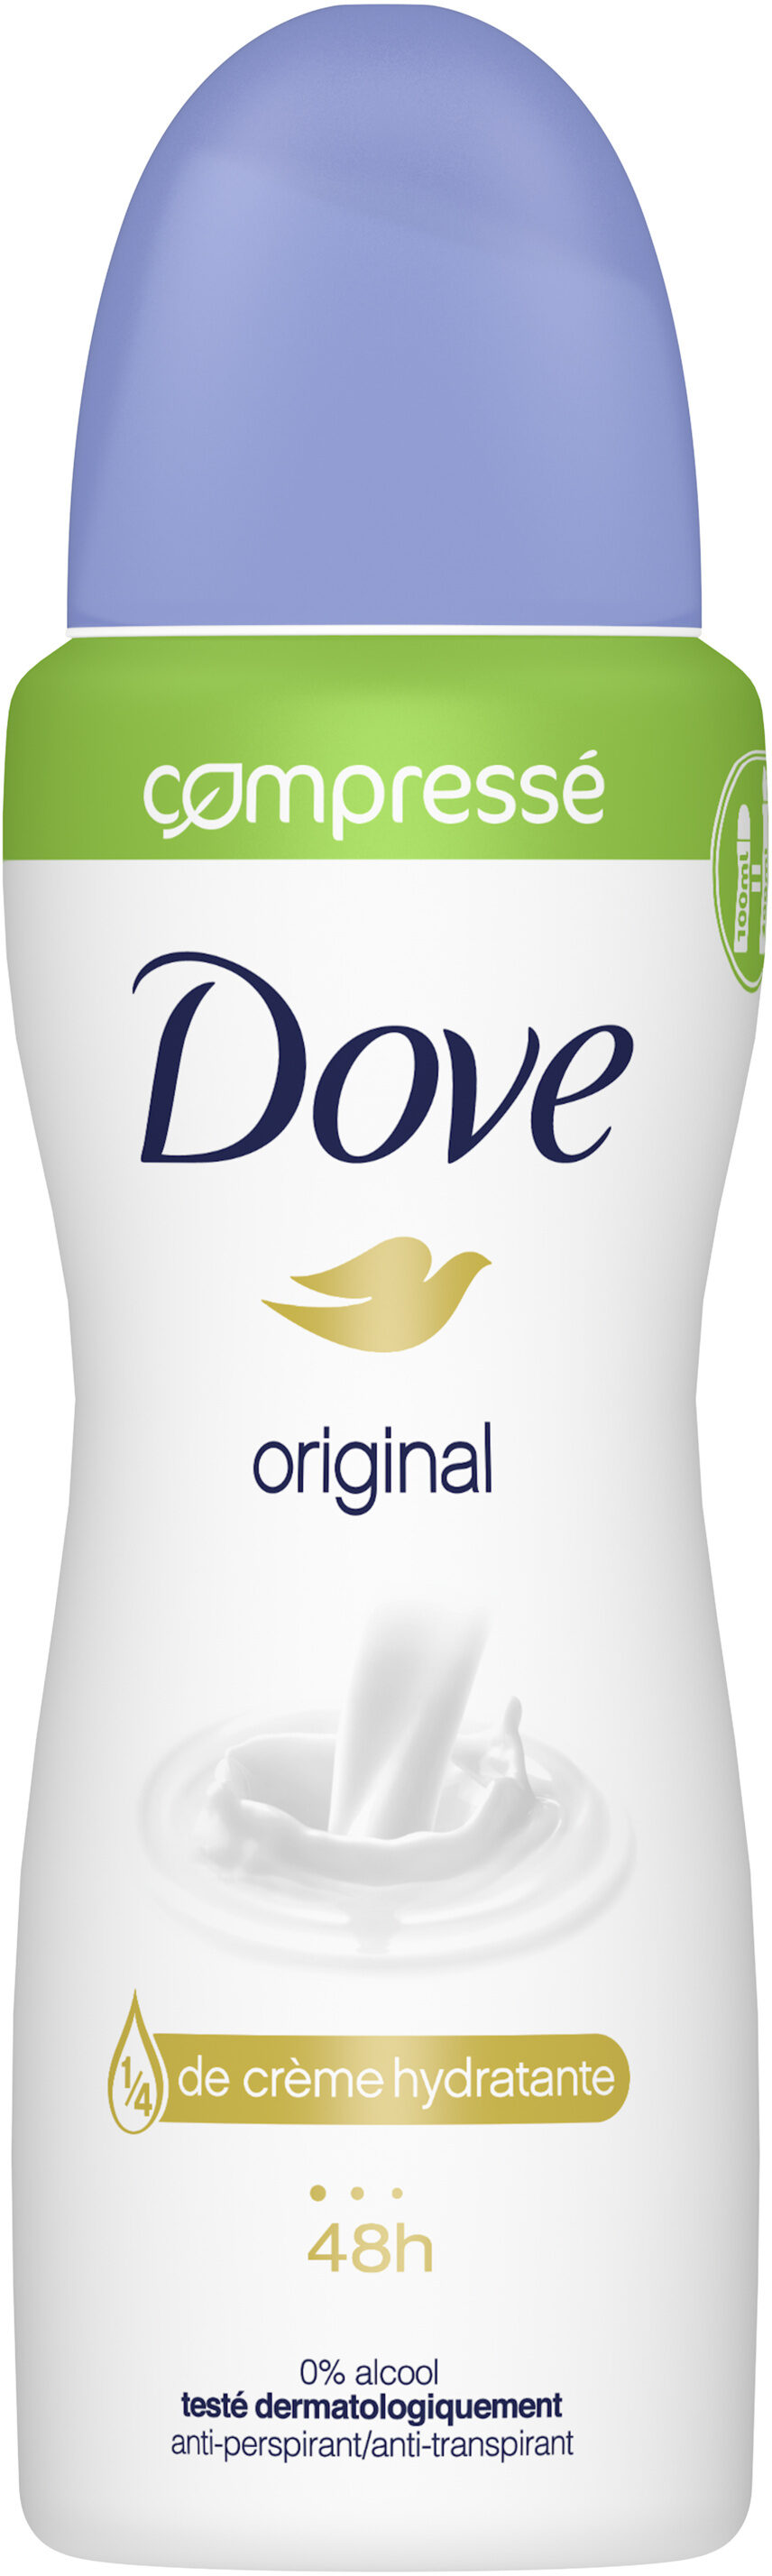 Dove original 100ml - Tuote - fr